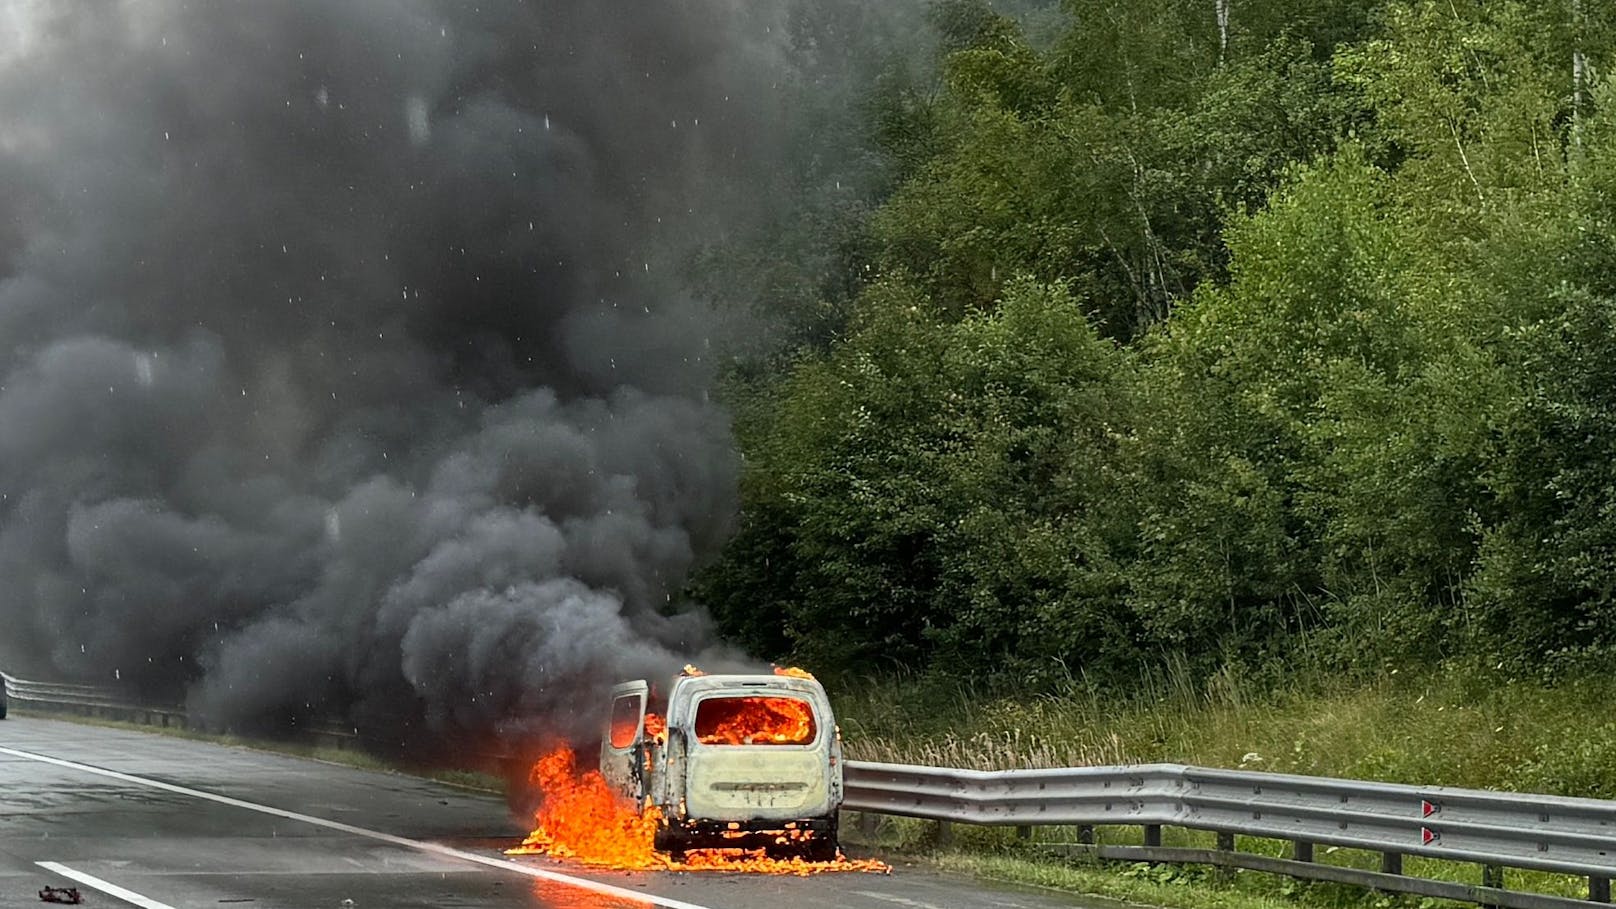 Gewaltige Rauchsäule – Auto geht auf A1 in Flammen auf